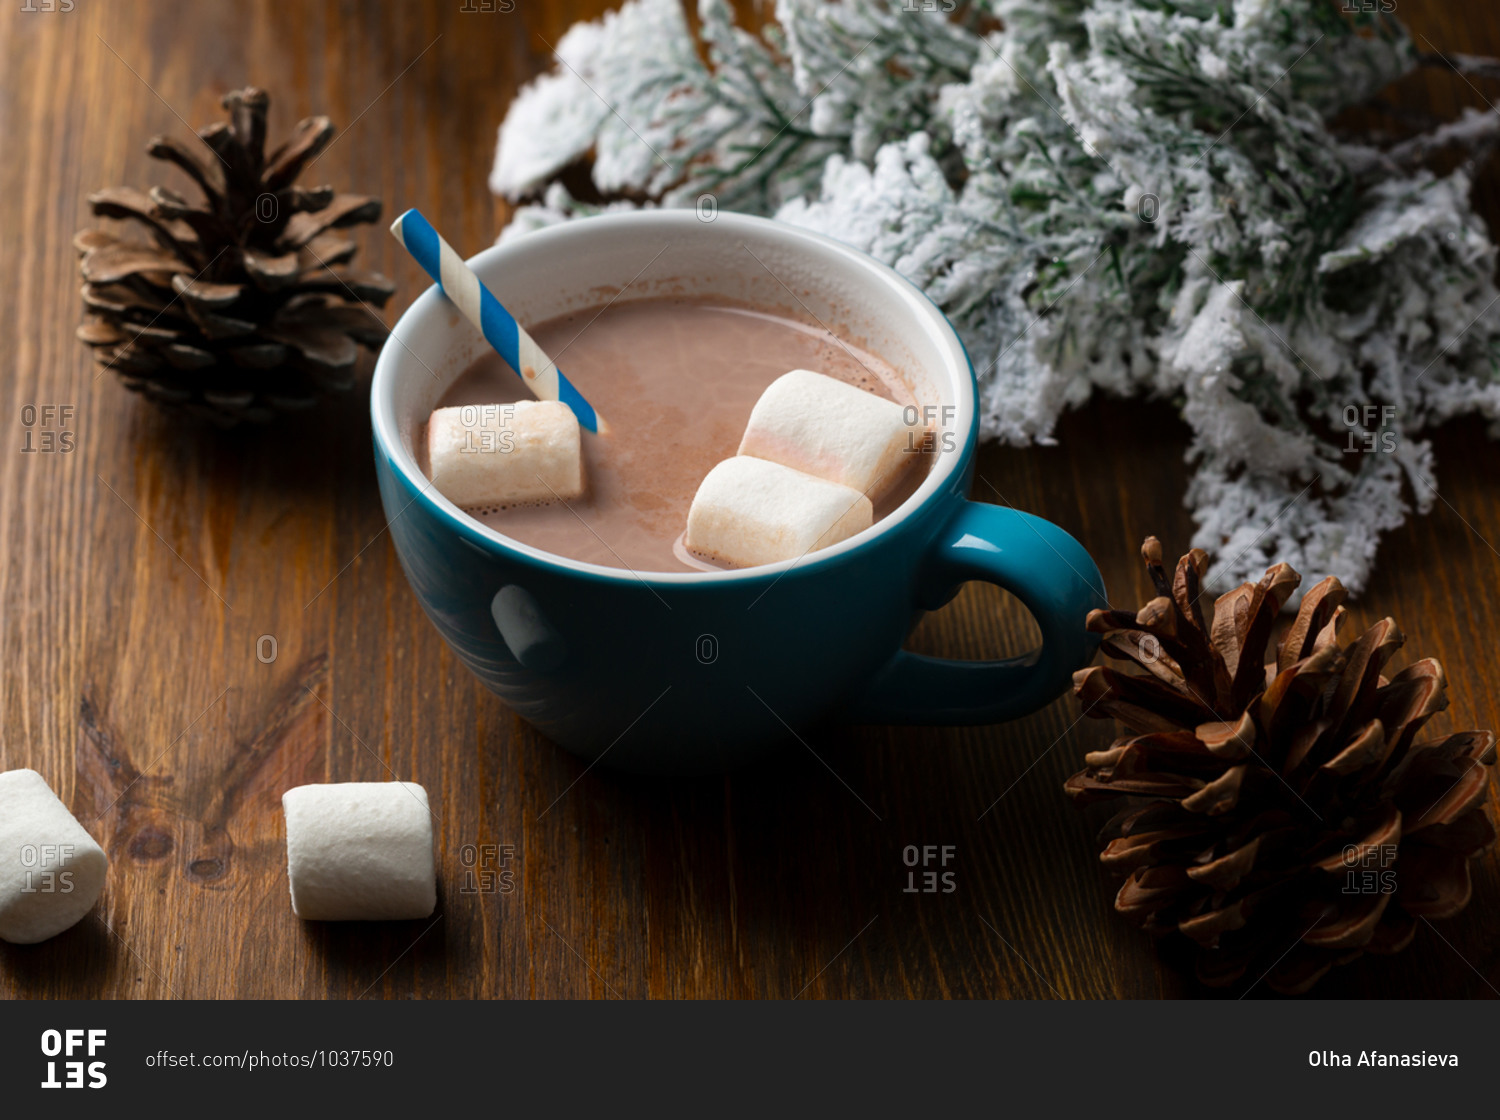 Hot chocolate in a blue mug